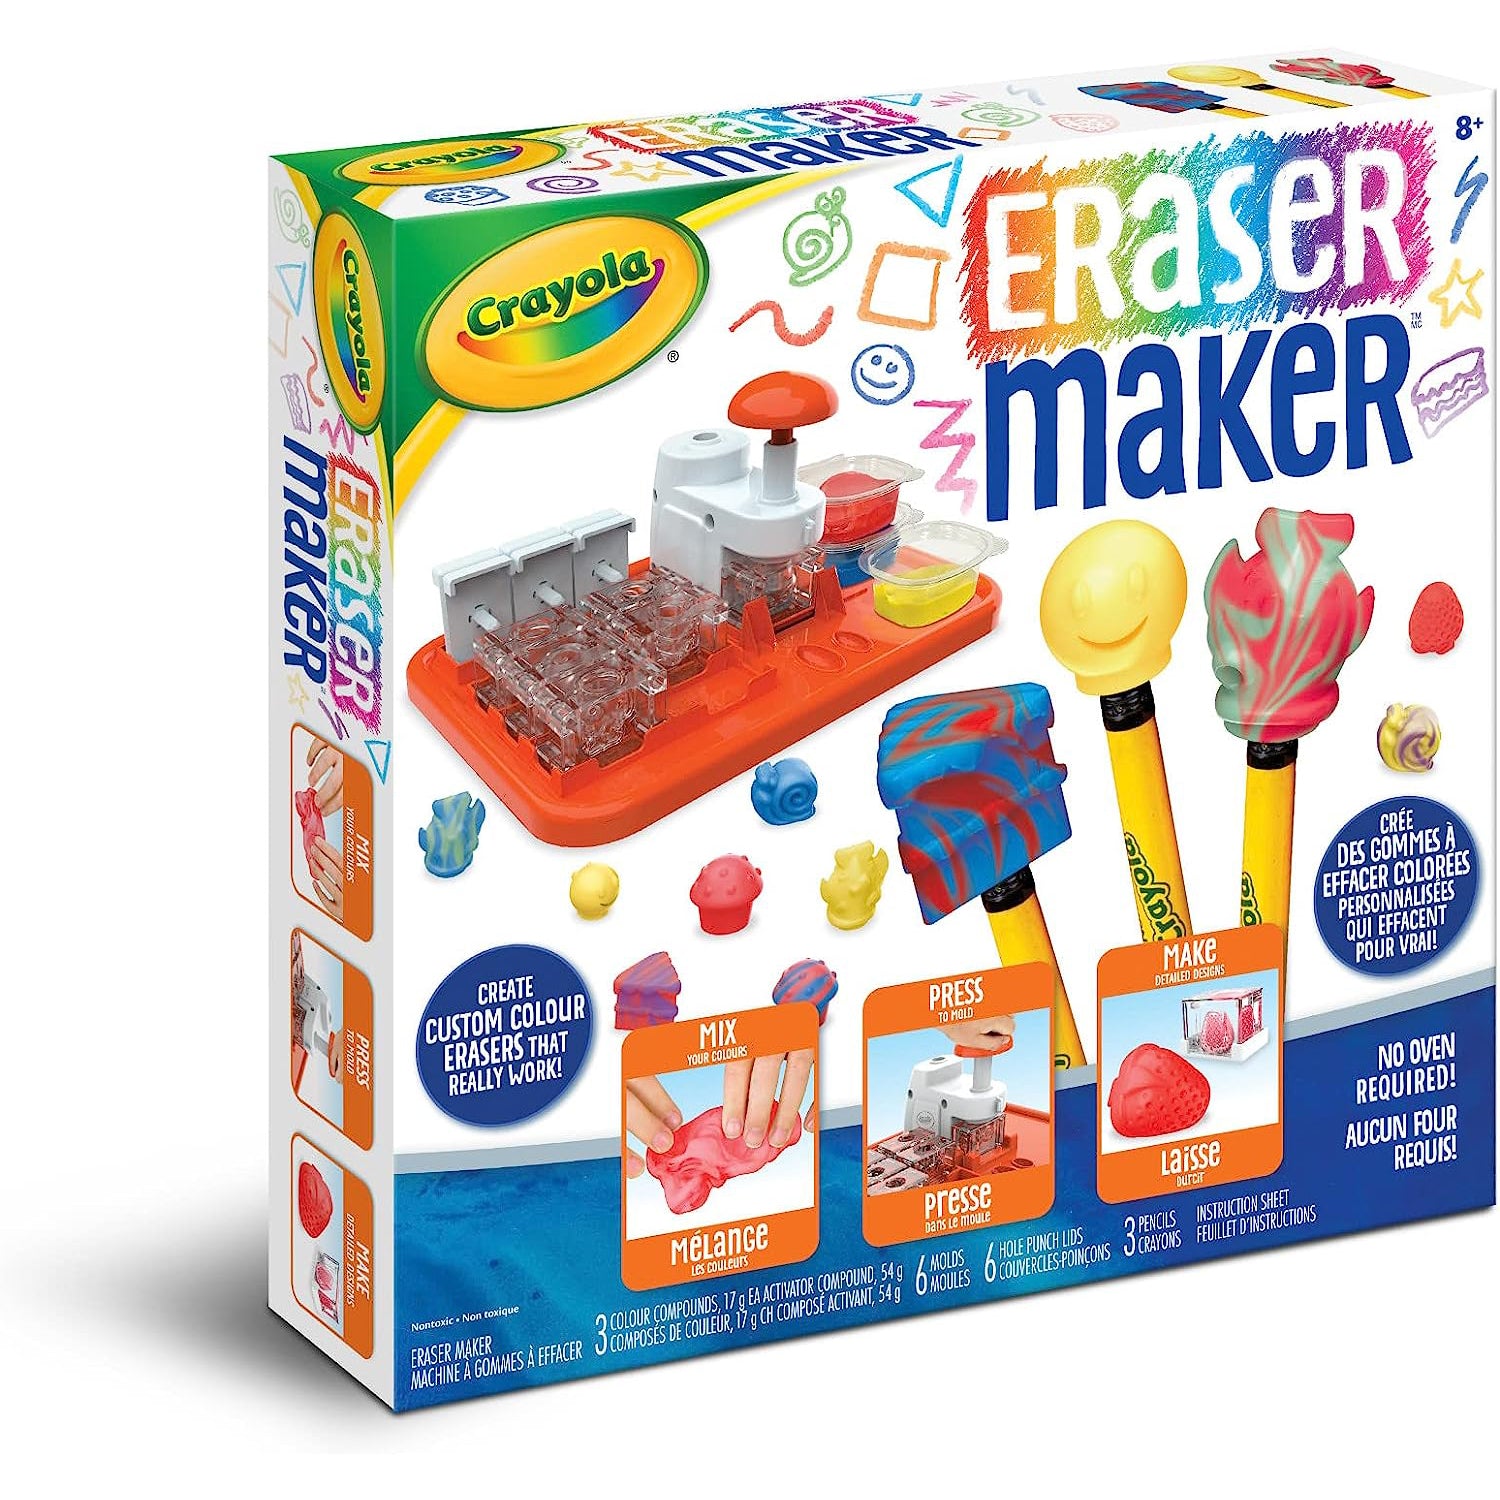 Crayola Marker Maker, DIY Craft Kit, Gift for Kids, Angola